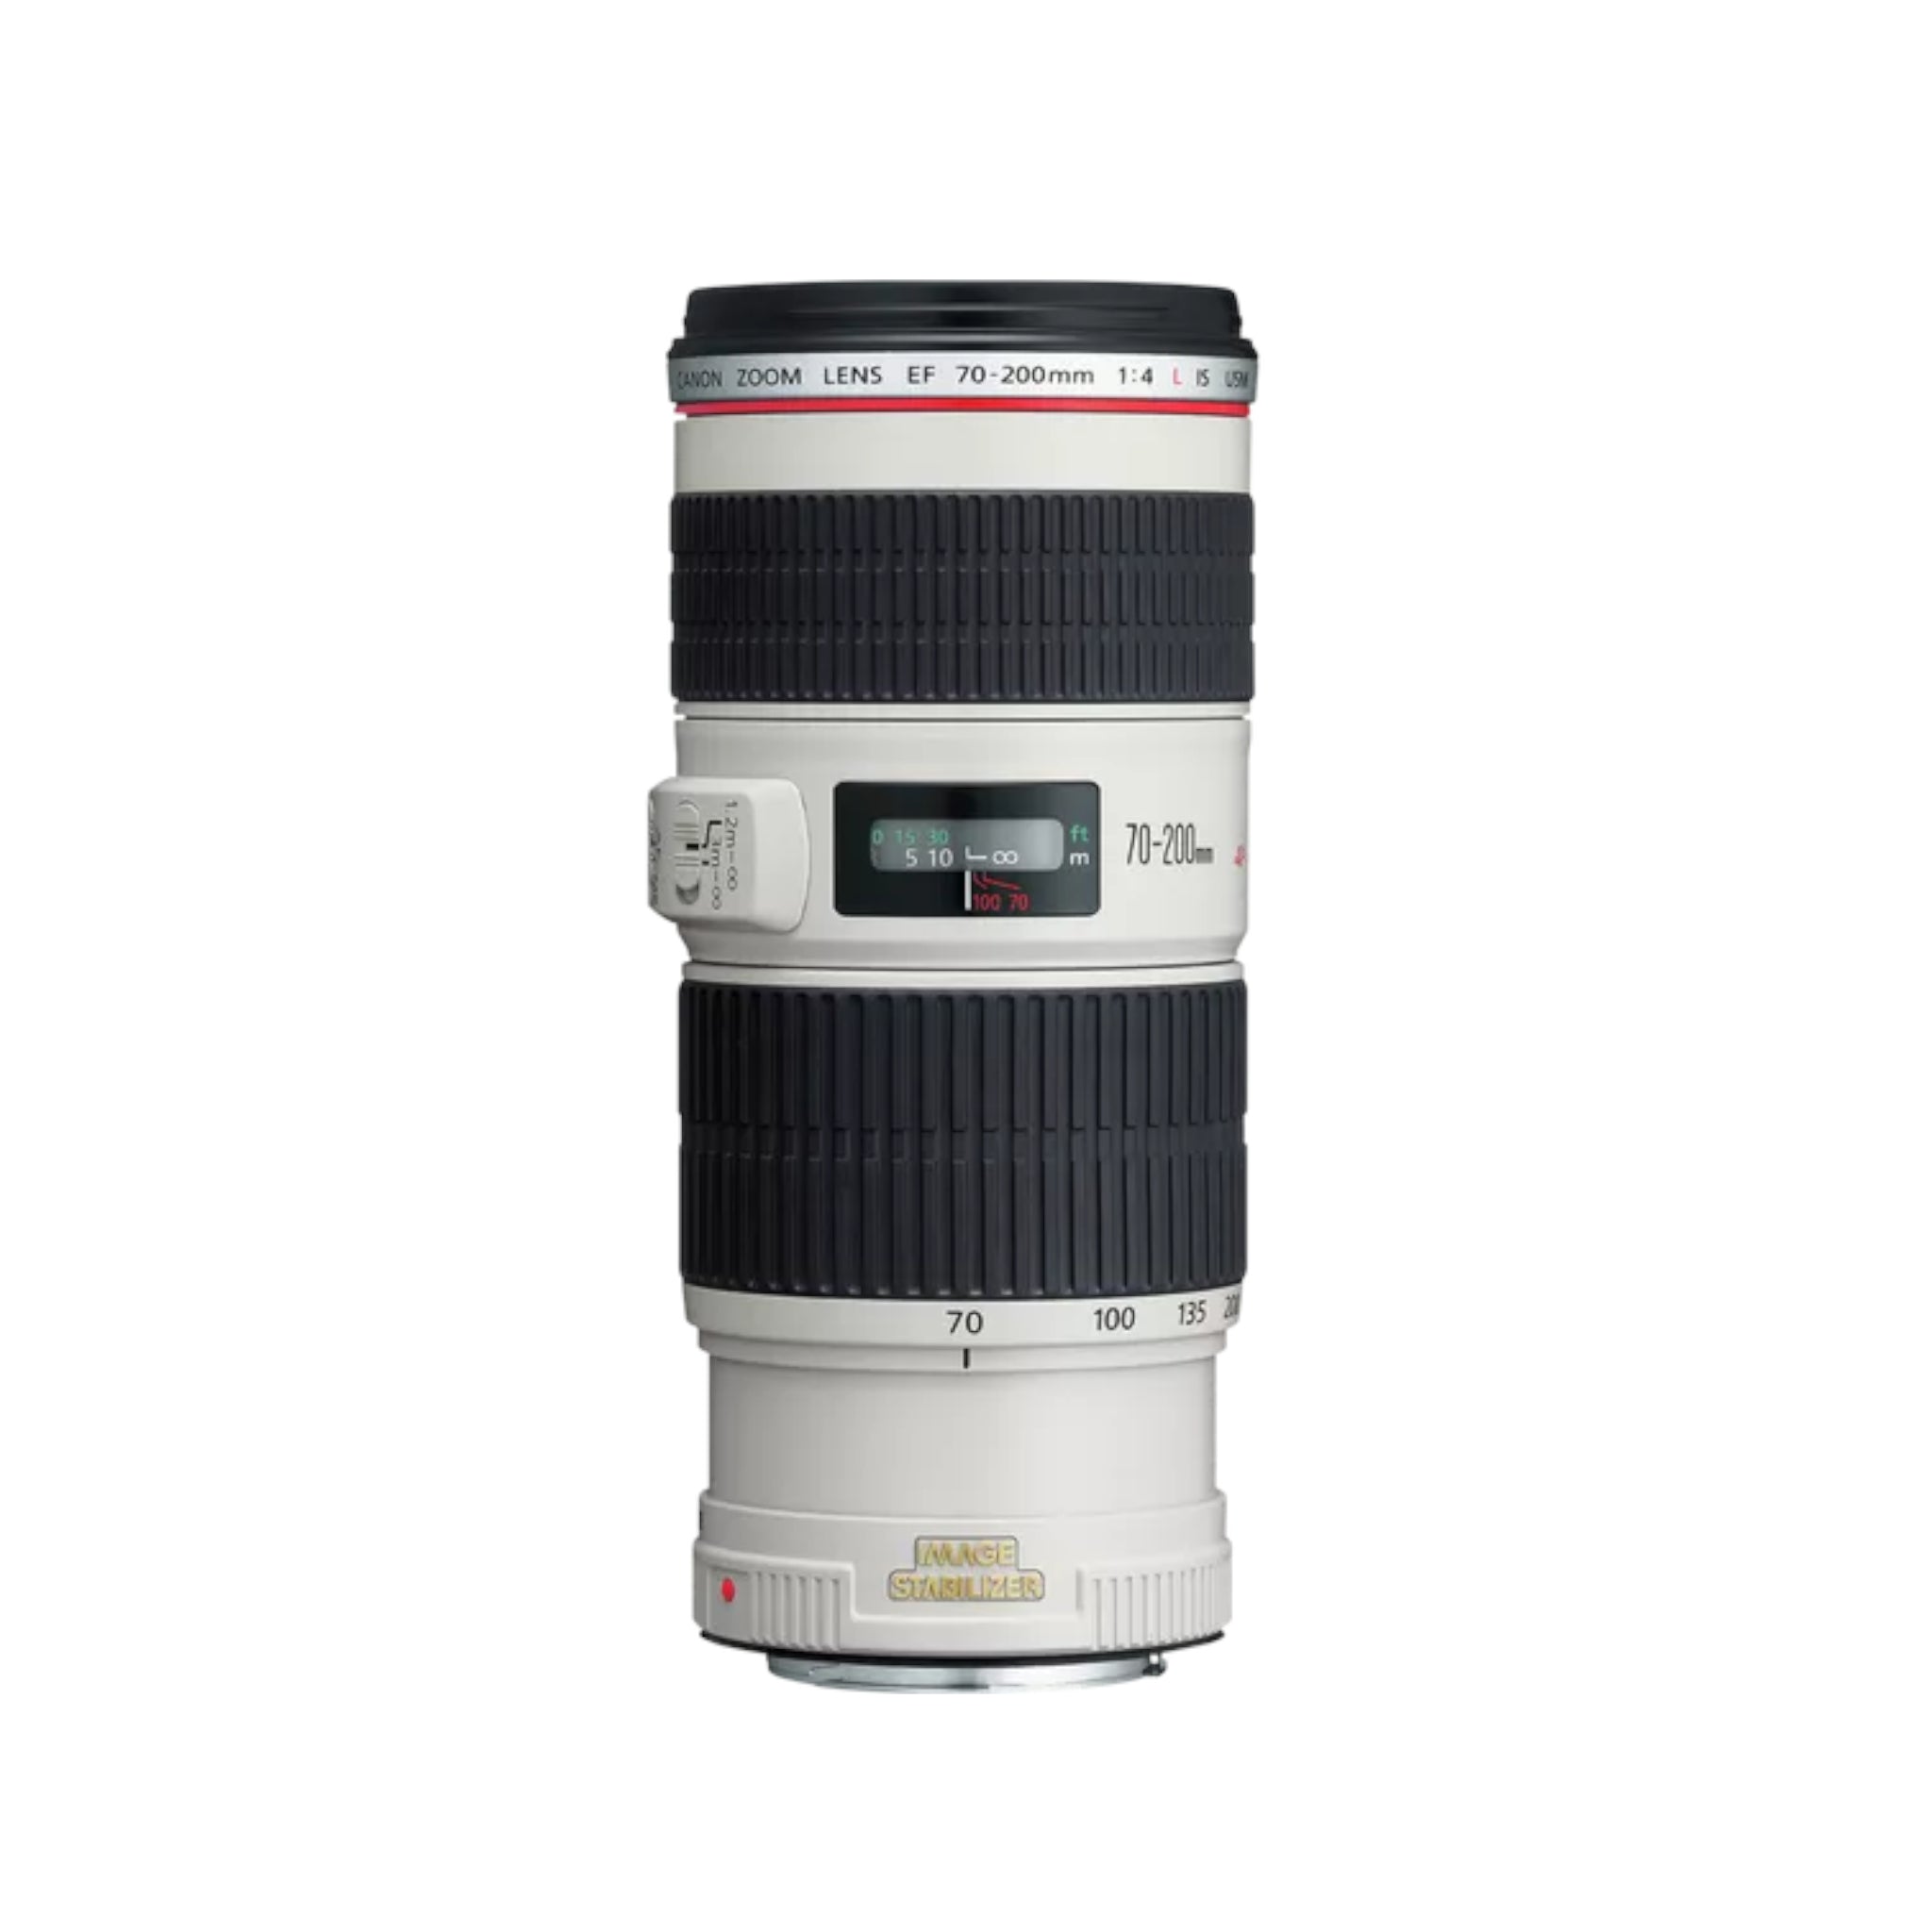 Canon EF 70-200mm f/4 L IS USM lens